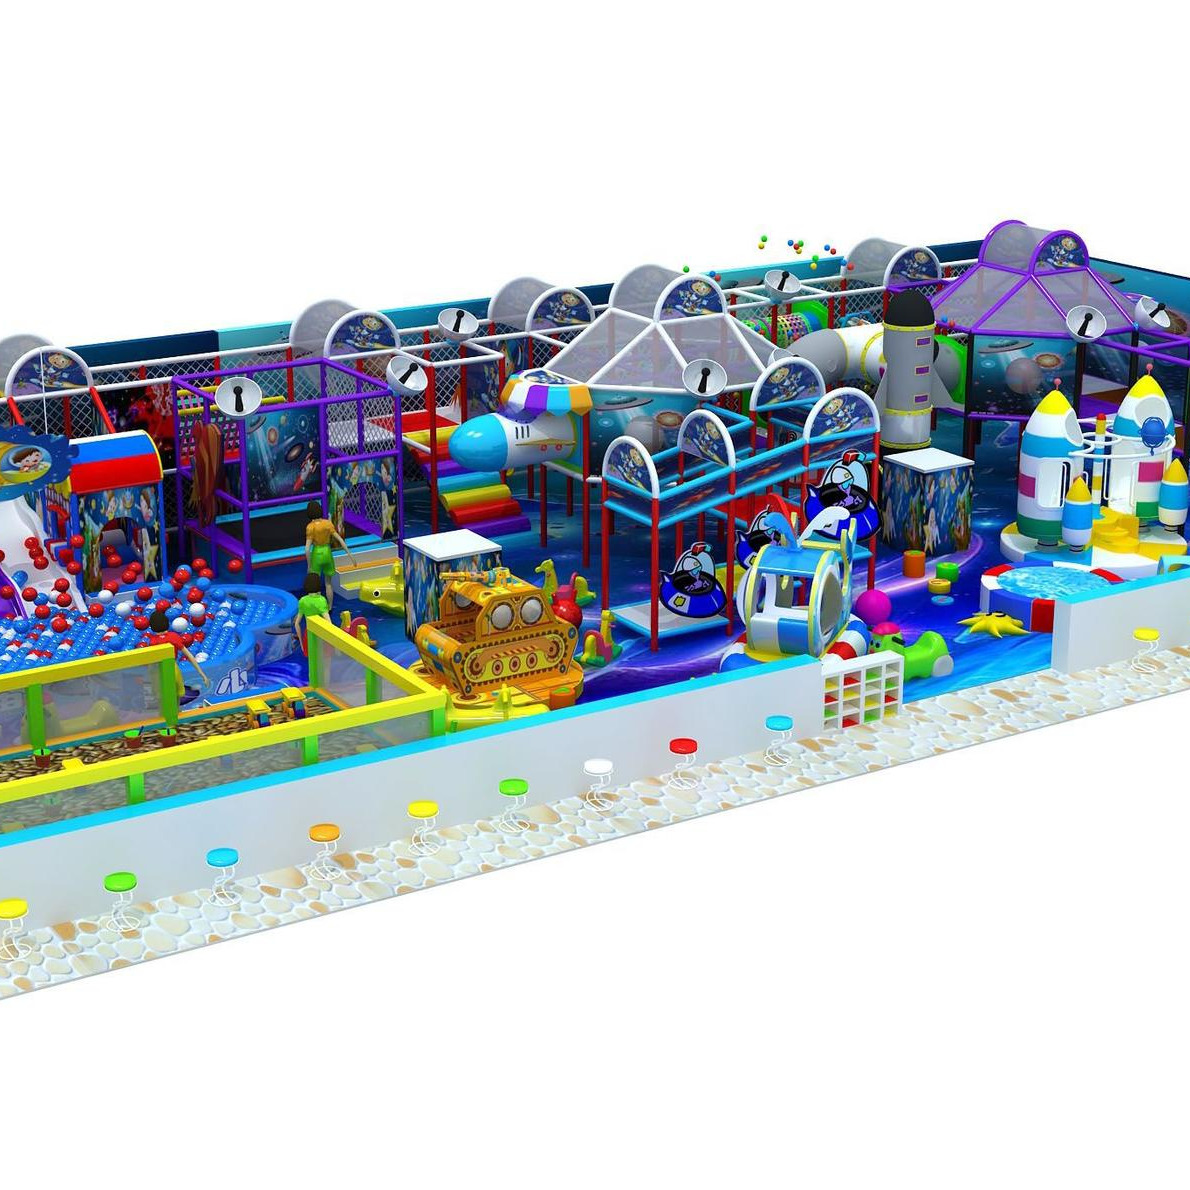 淘气室内儿童乐园淘气堡大型组合游乐设备亲子乐园糖果屋主题淘气